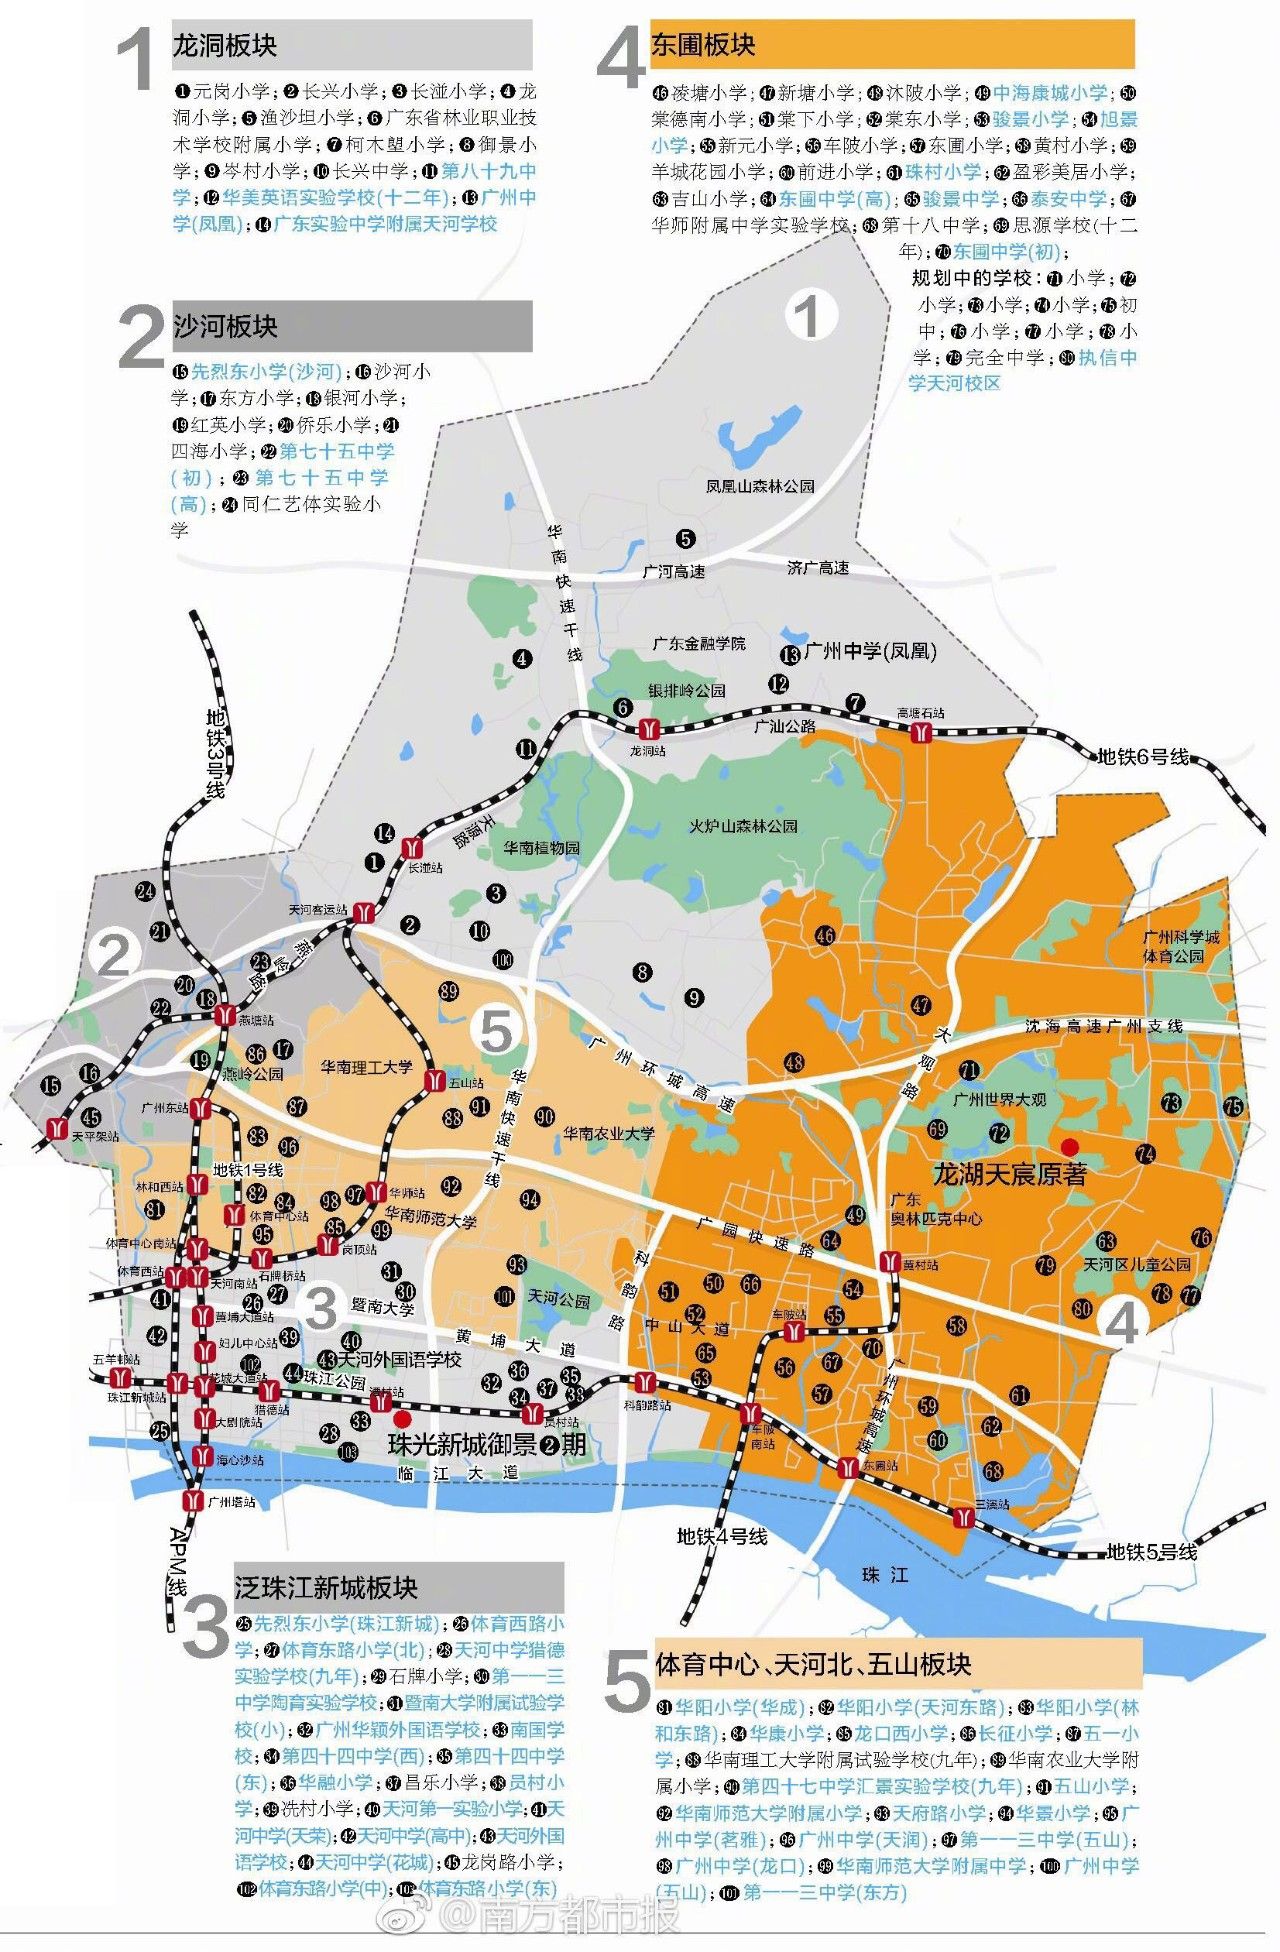 其它 正文  来源:南方都市报 广州的教育,早已不是越秀一区独大.